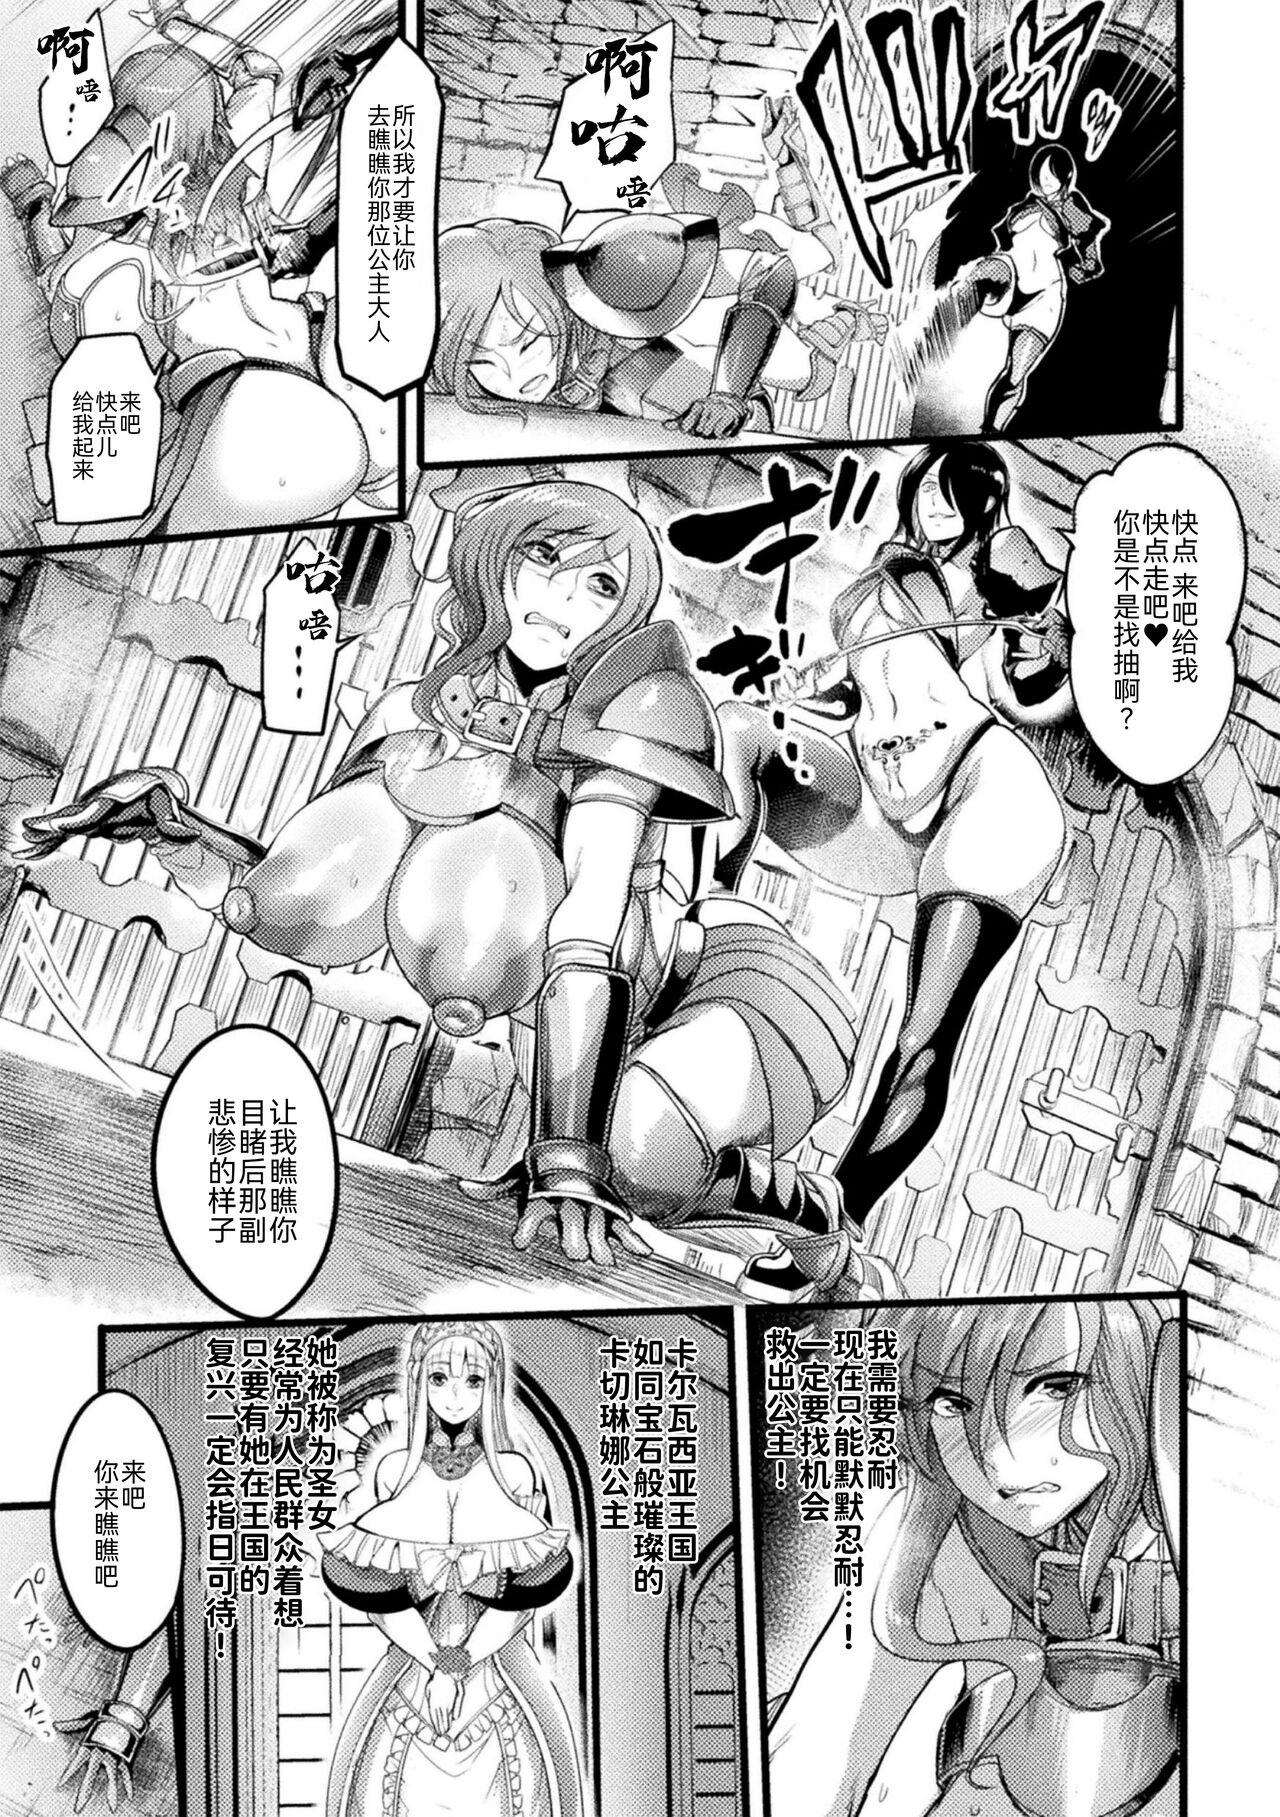 Nena 2D Comic Magazine Nikubenki Koujou Vol. 1 Smalltits - Page 5